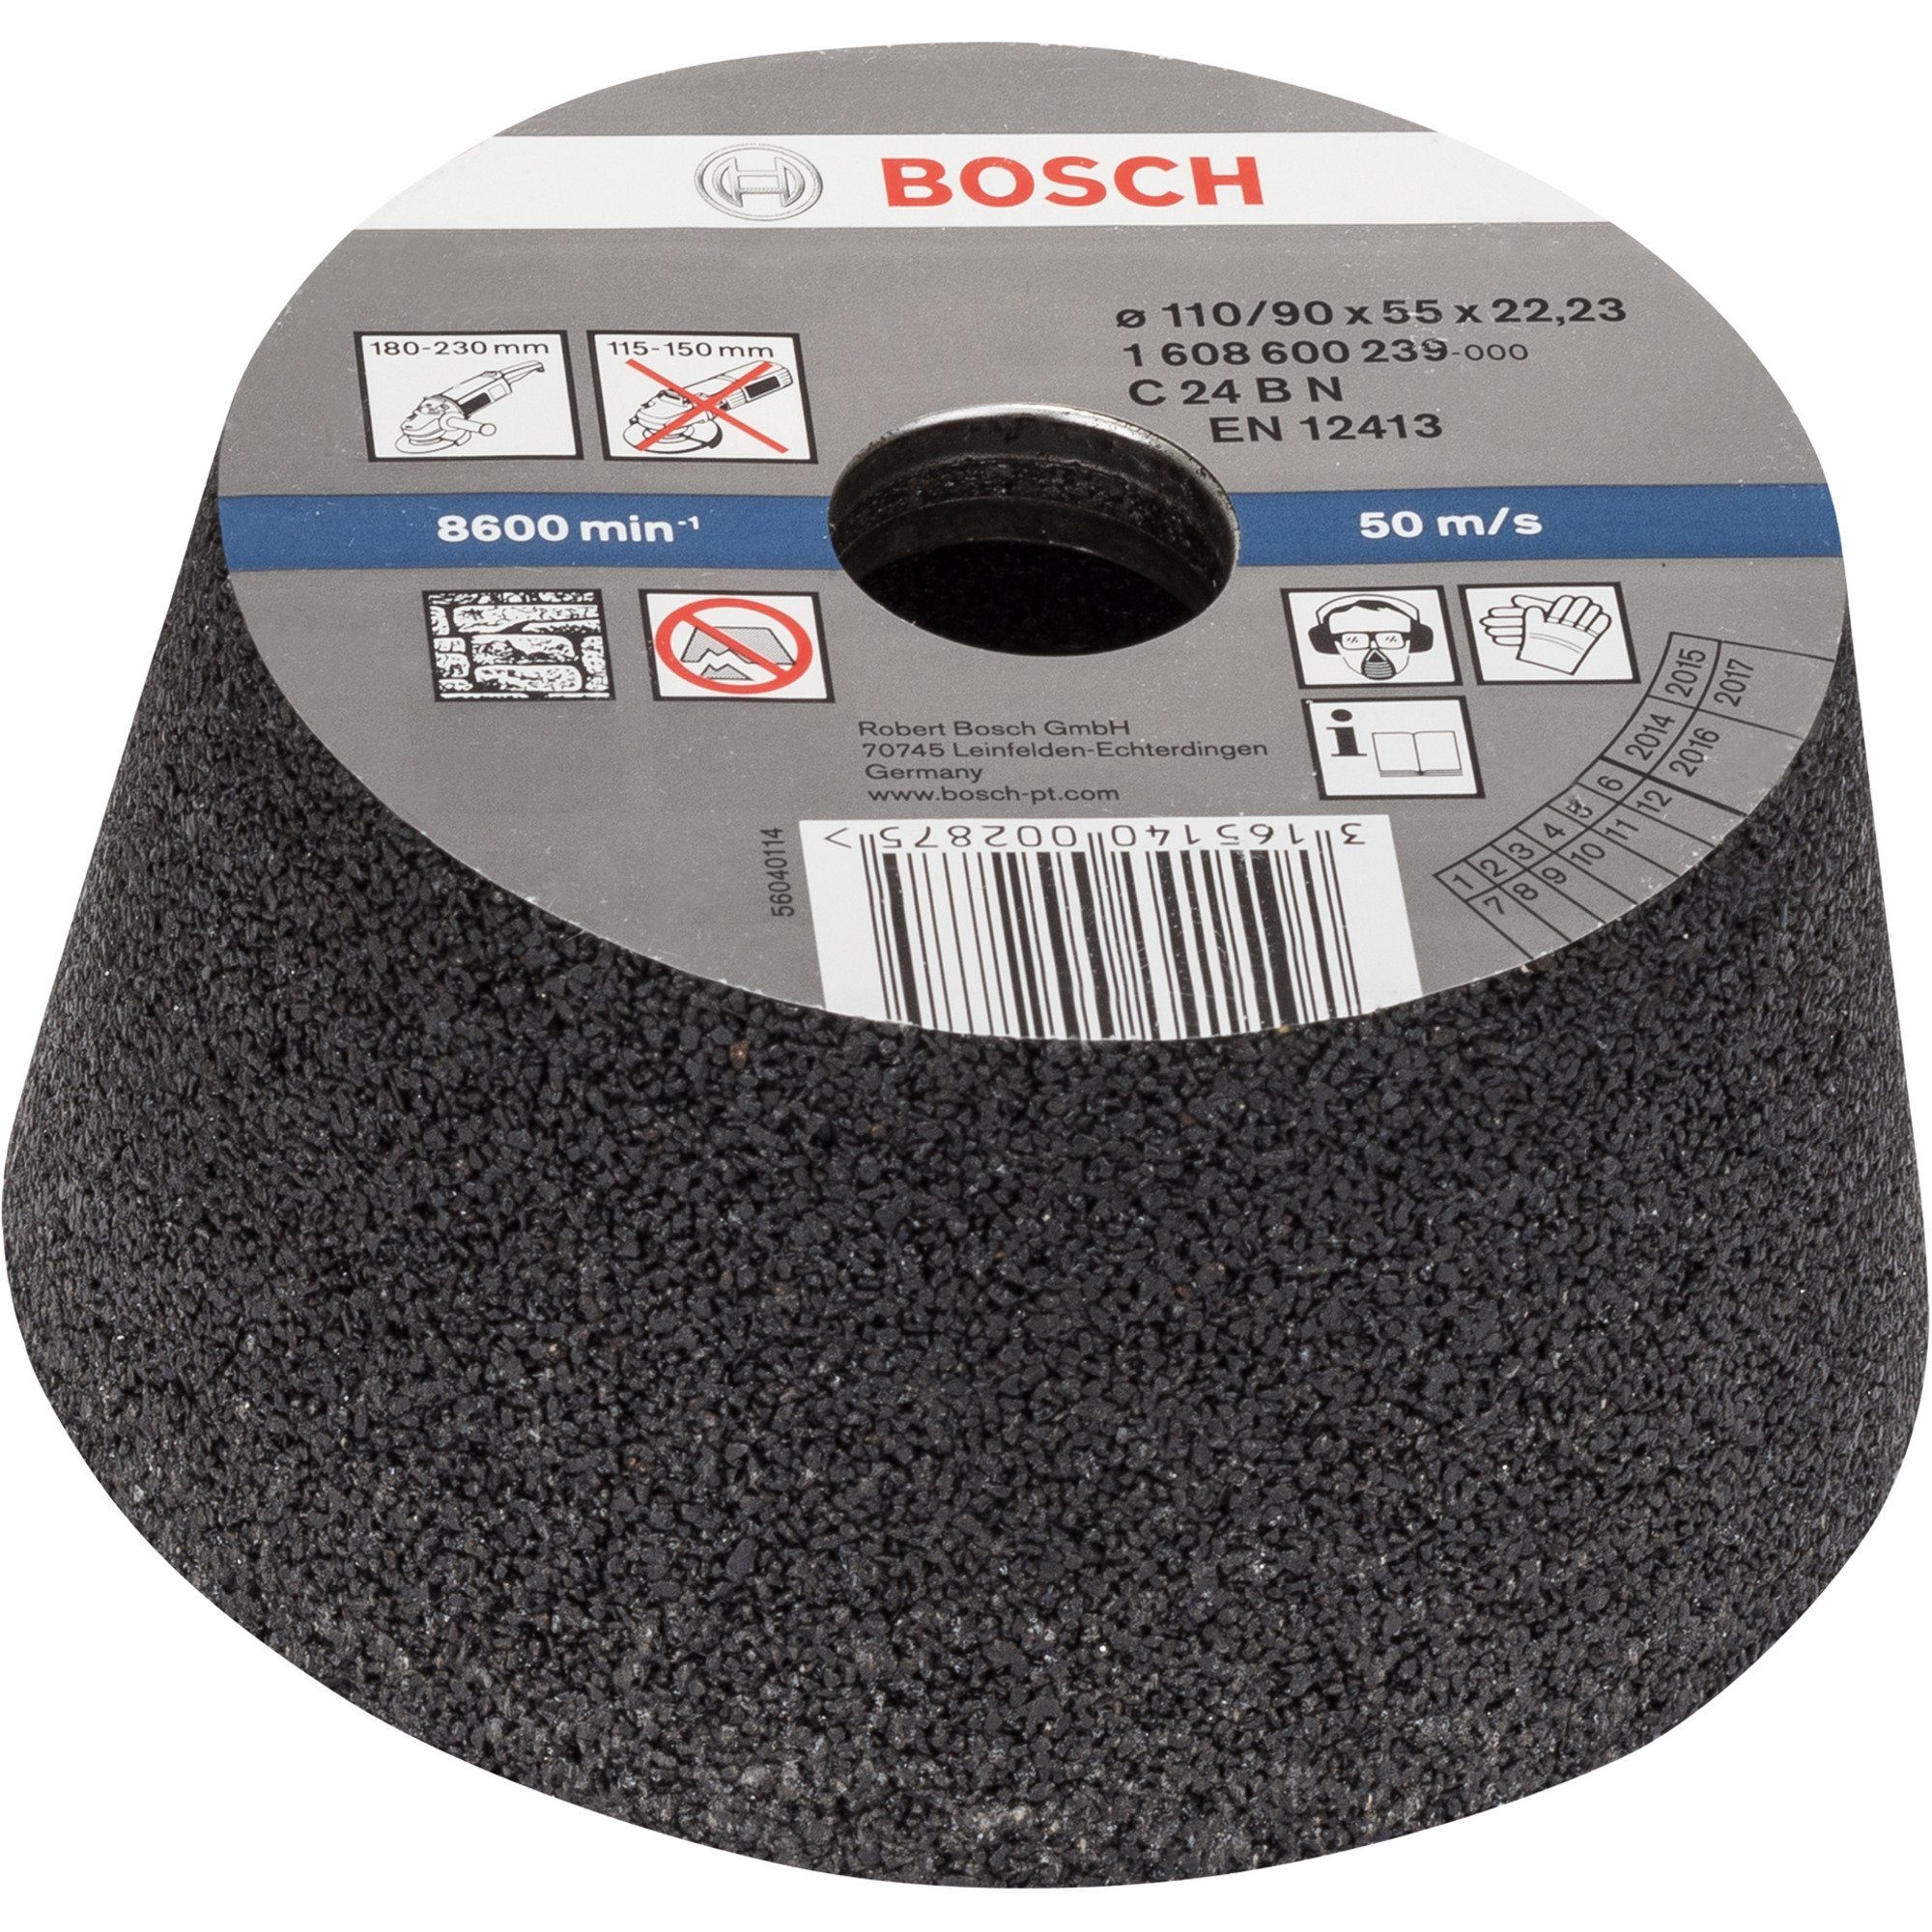 Accessories BOSCH konisch, Professional Stein Schleifscheibe Schleiftopf für Bosch Bosch